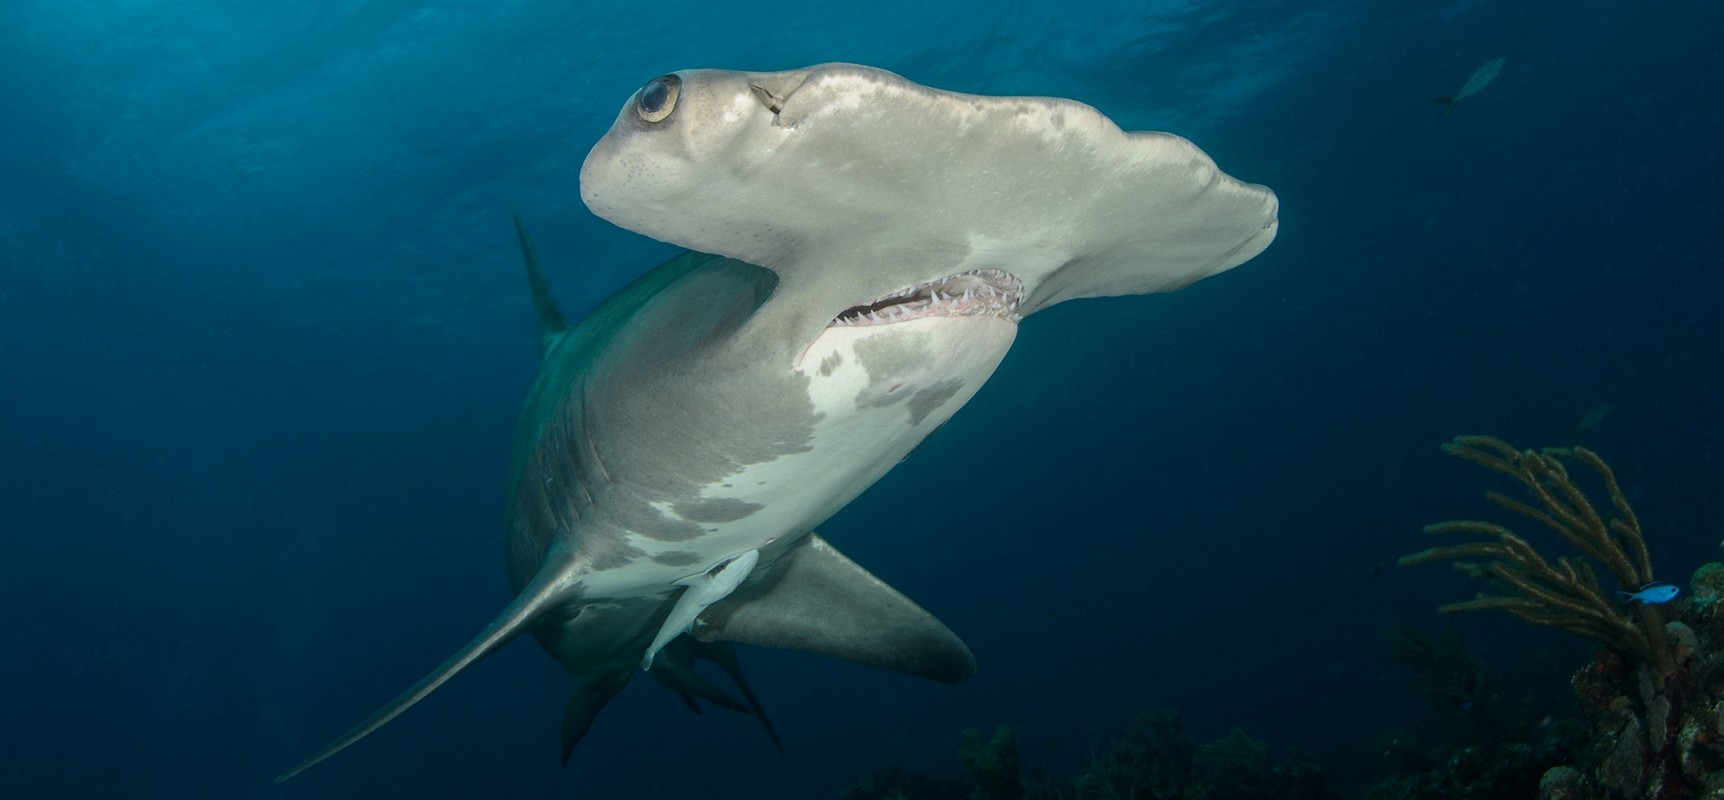 Galapagos Darwin Island Liveaboard Diving Hammerhead Shark